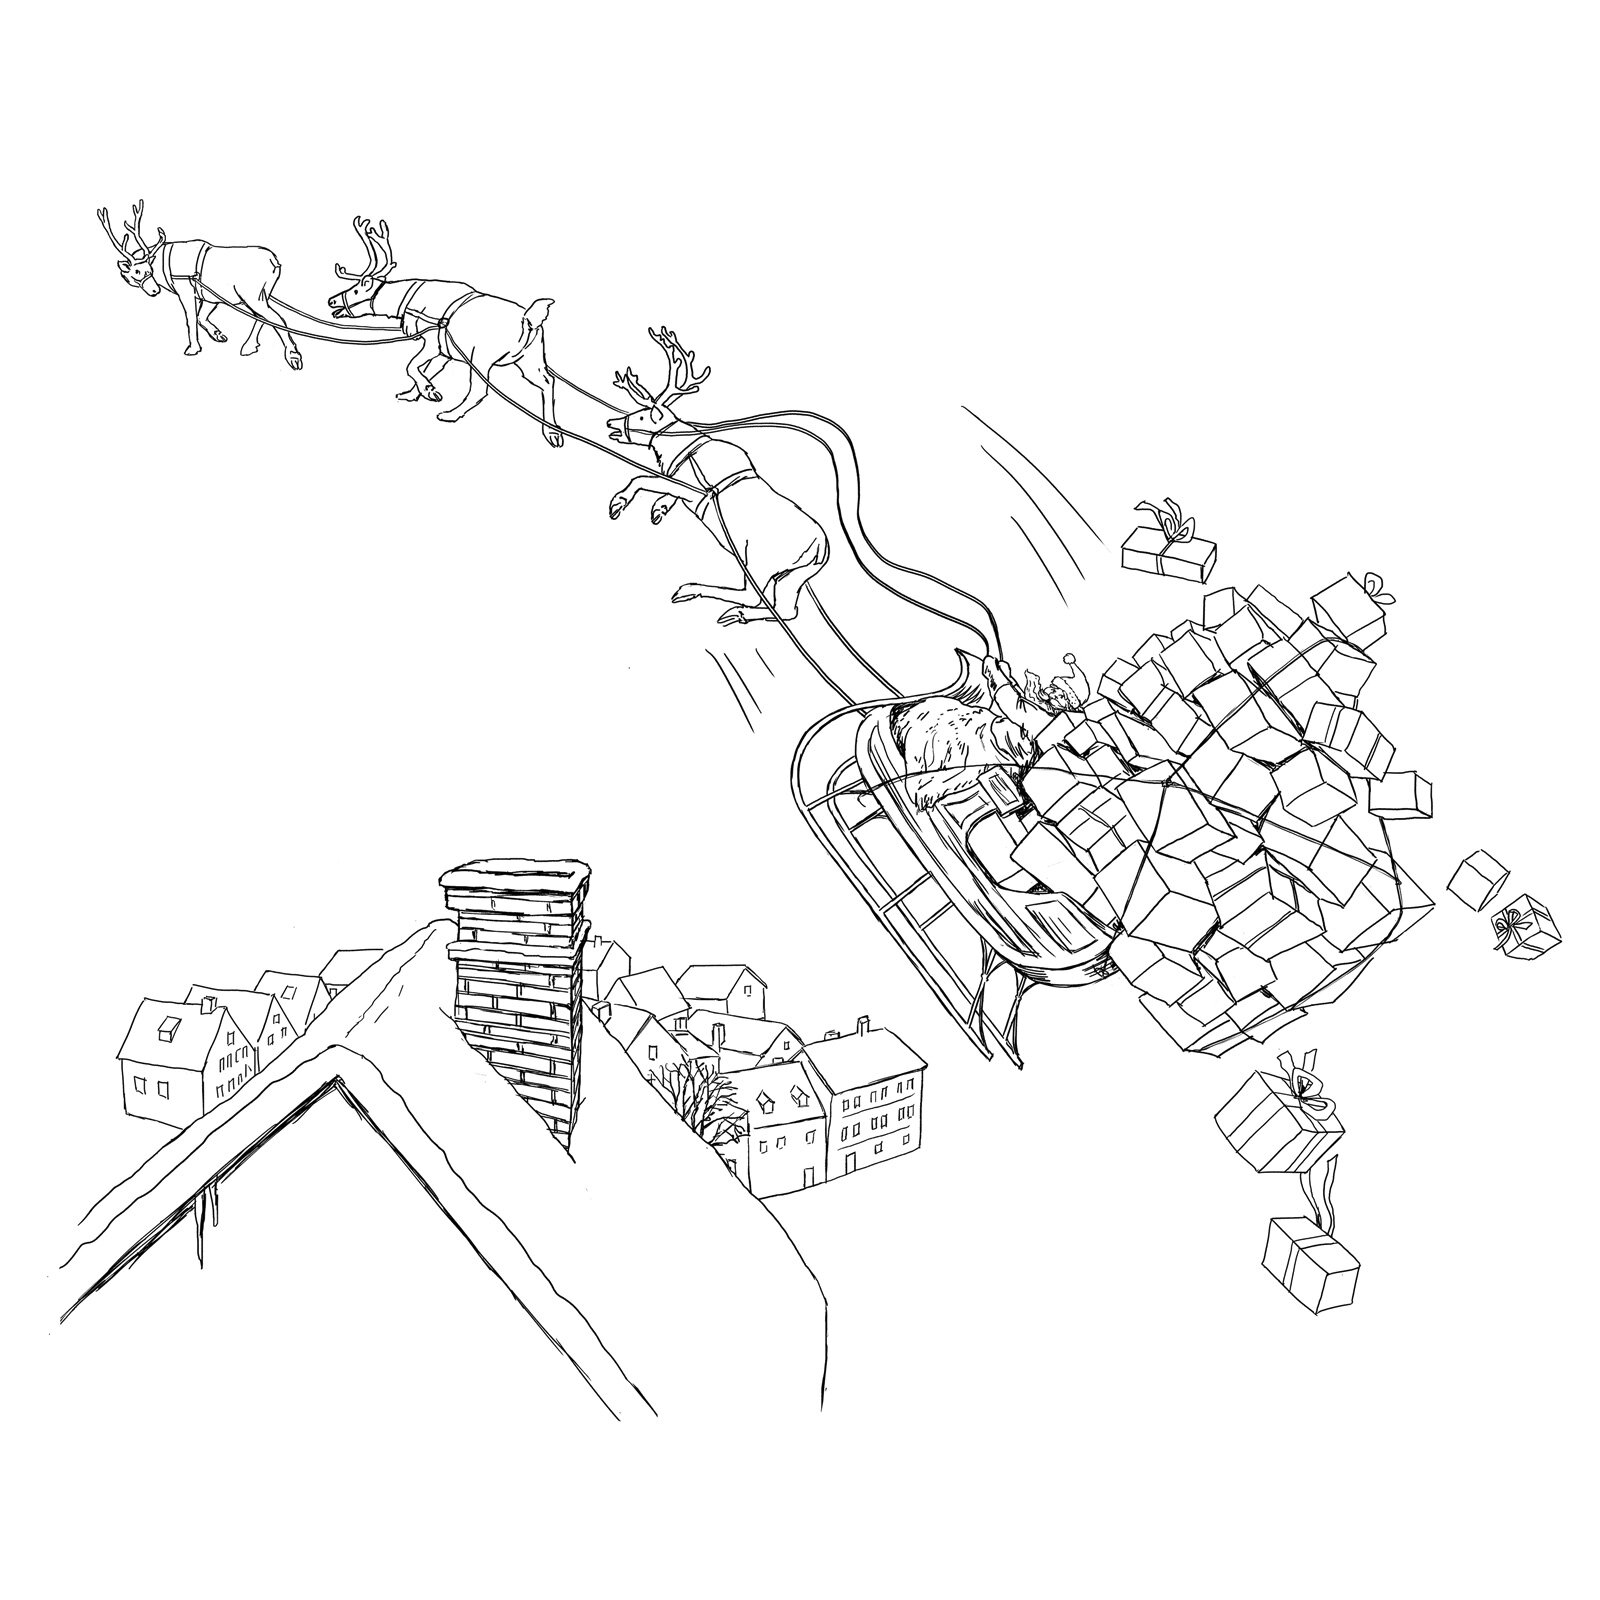 oculus-illustration-weihnachten-karte-weihnachtsmann-overload